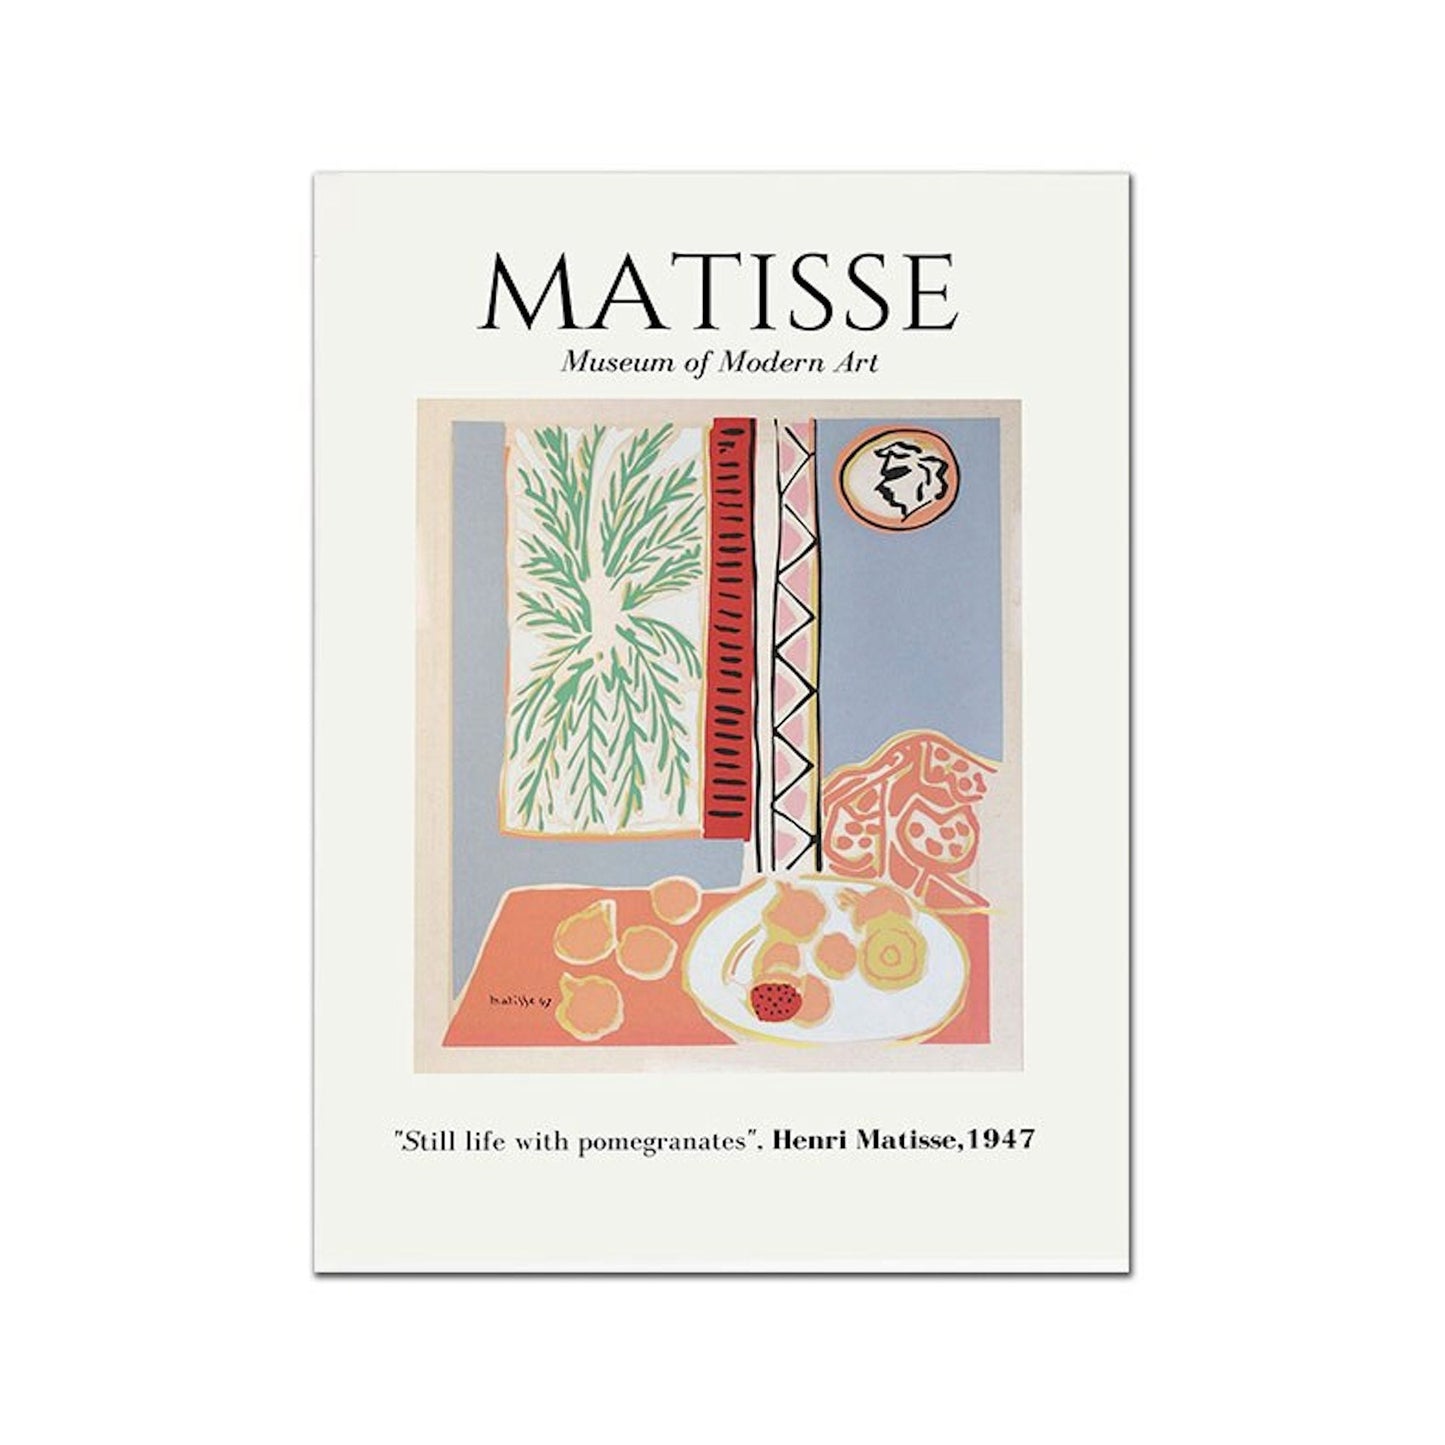 Poster Matisse Gesicht Abstrakt | Bilder Wohnzimmer | Wandbilder Schlafzimmer | Deko Print ohne Rahmen | Bilder Set Matisse Bunt